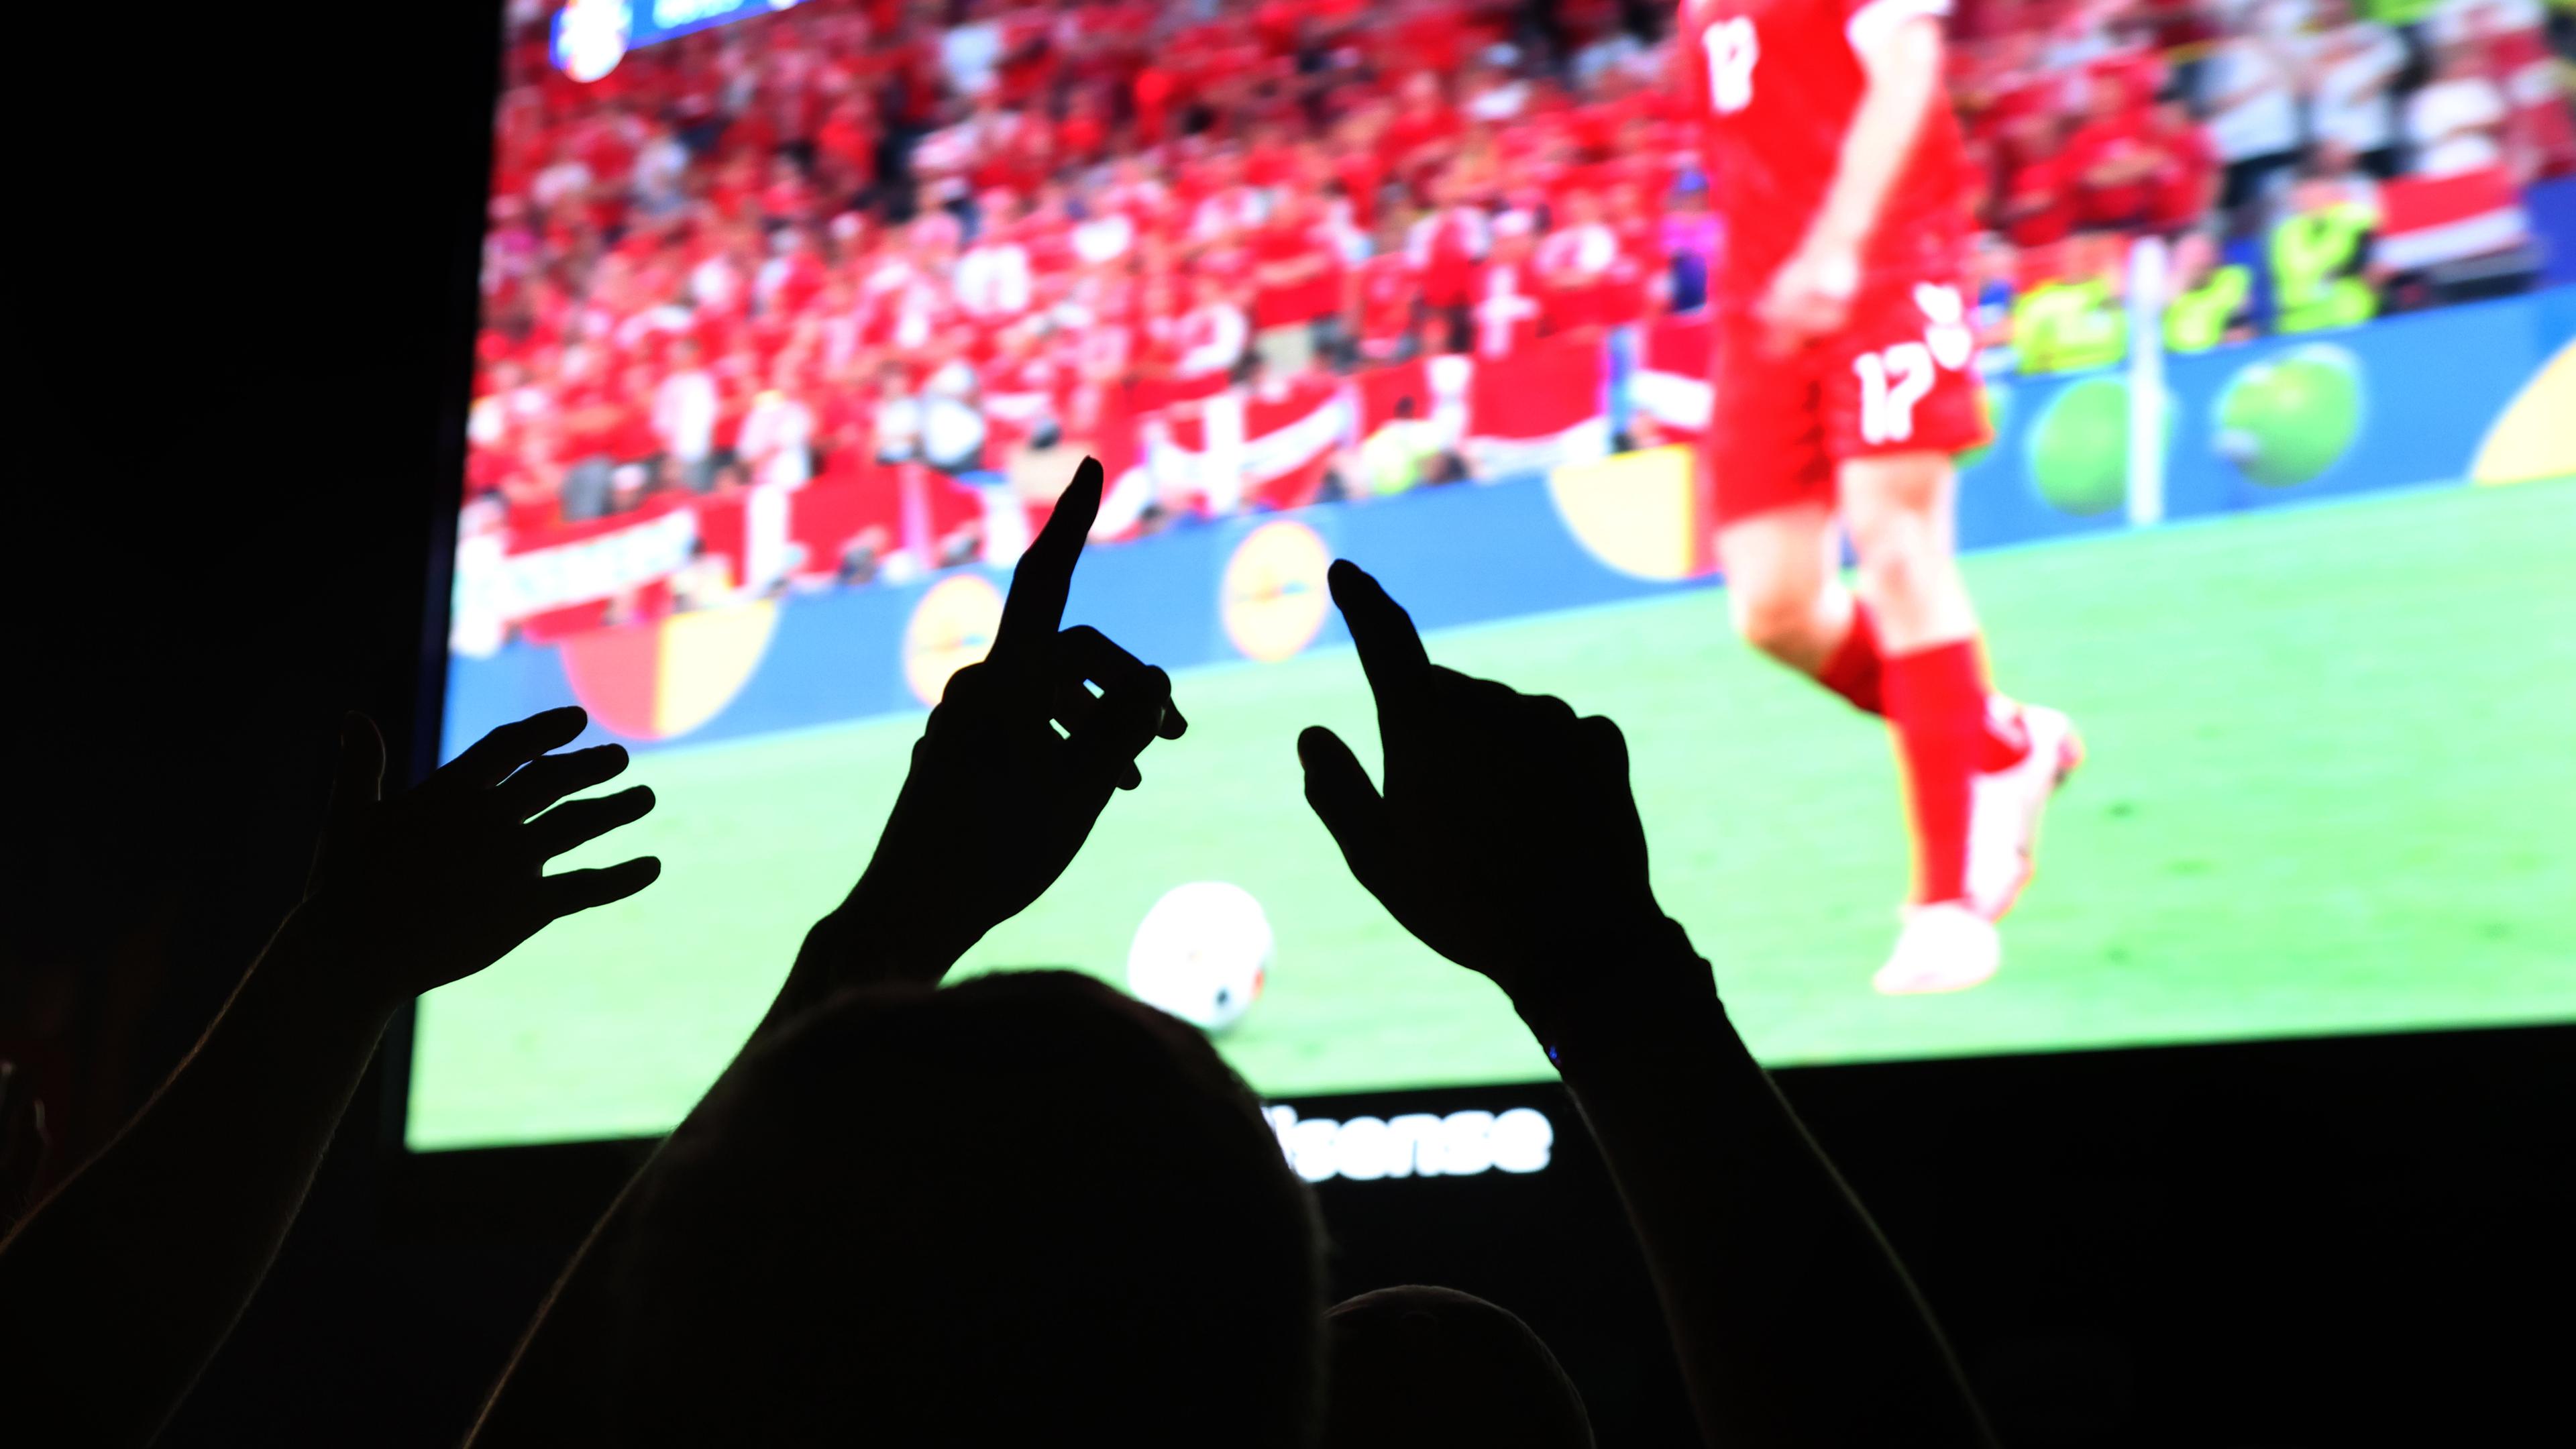 Jubel während des EM-Fußballspiels zwischen Deutschland und Dänemark beim Public Viewing in München.